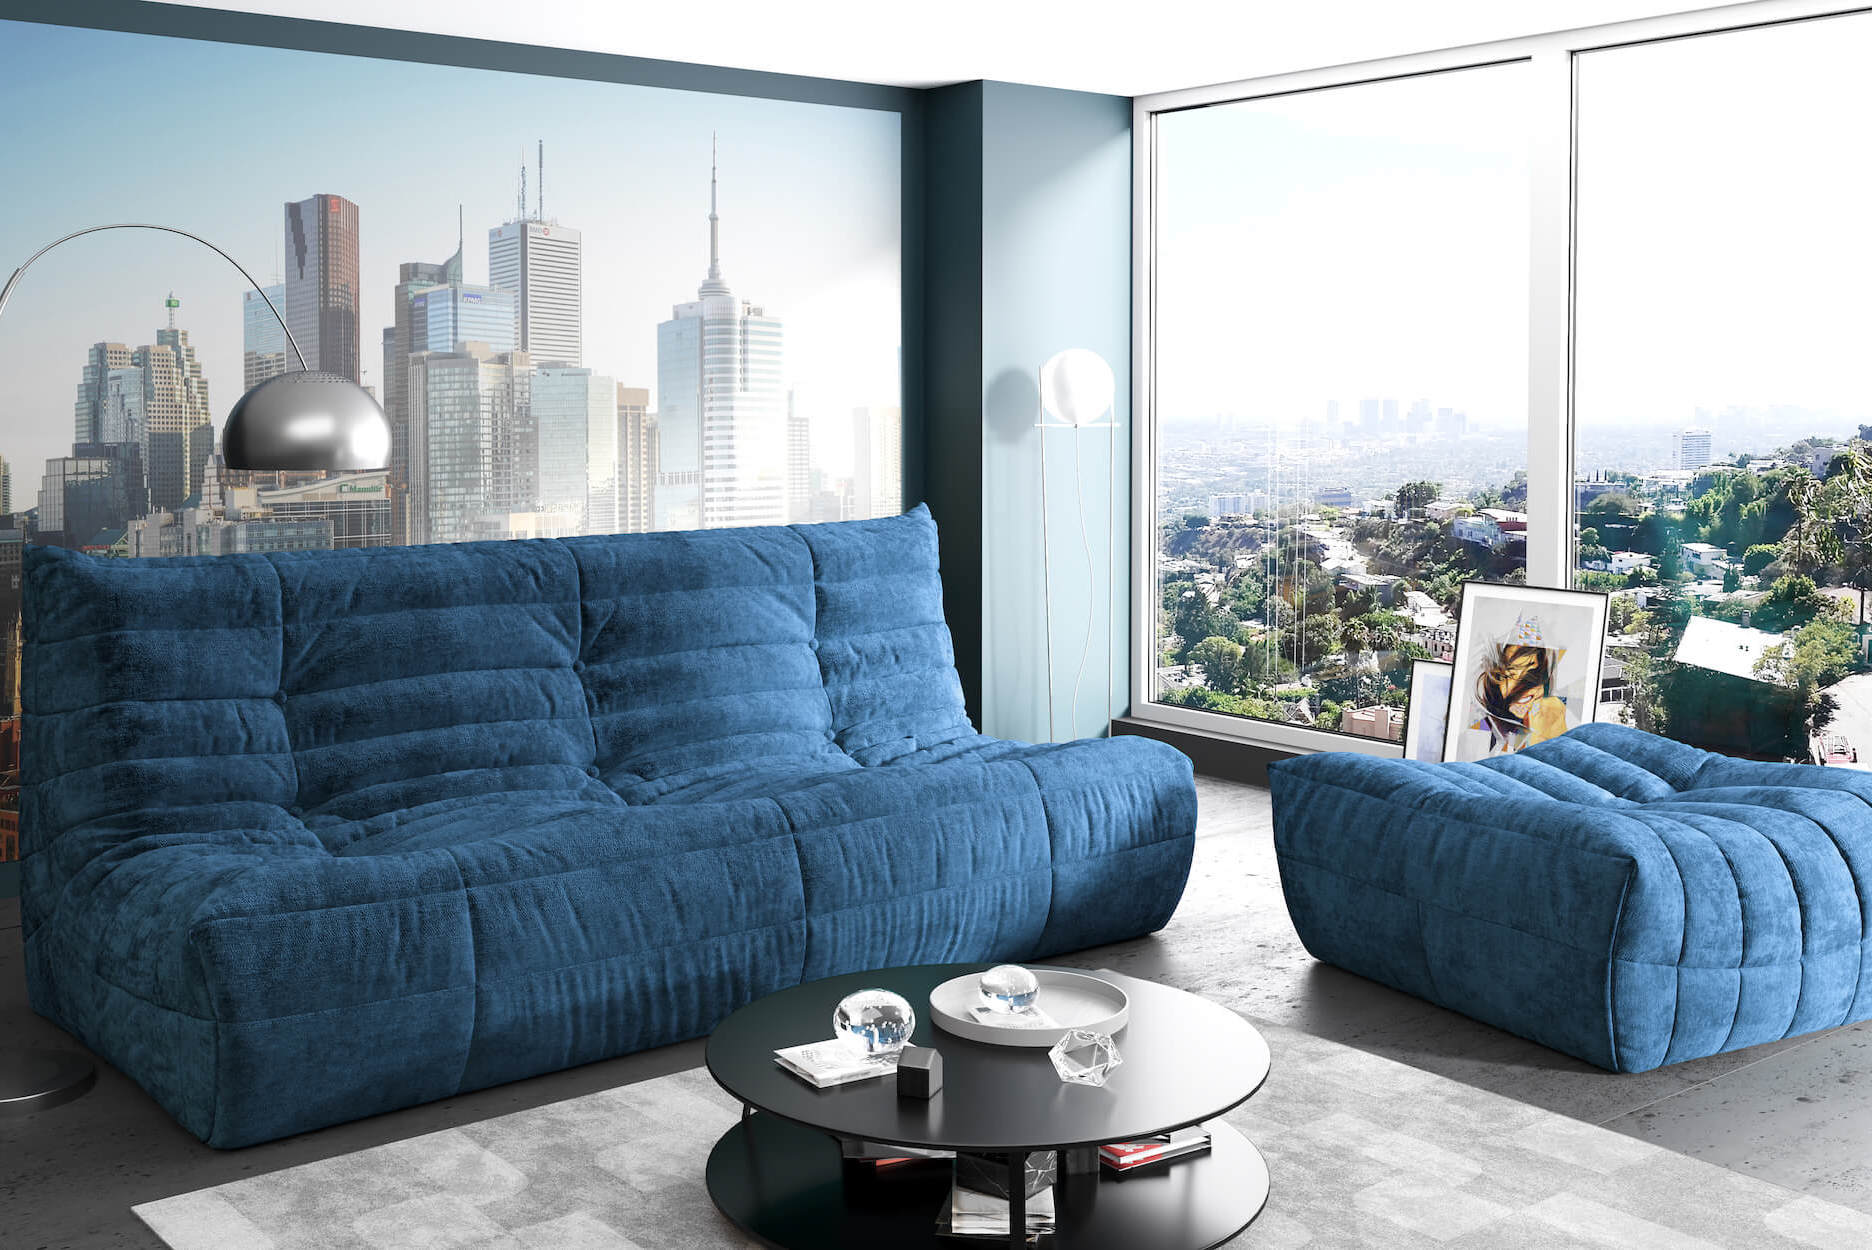 Синий диван в интерьере: с чем сочетать, как расположить, оттенки, виды, механизмы